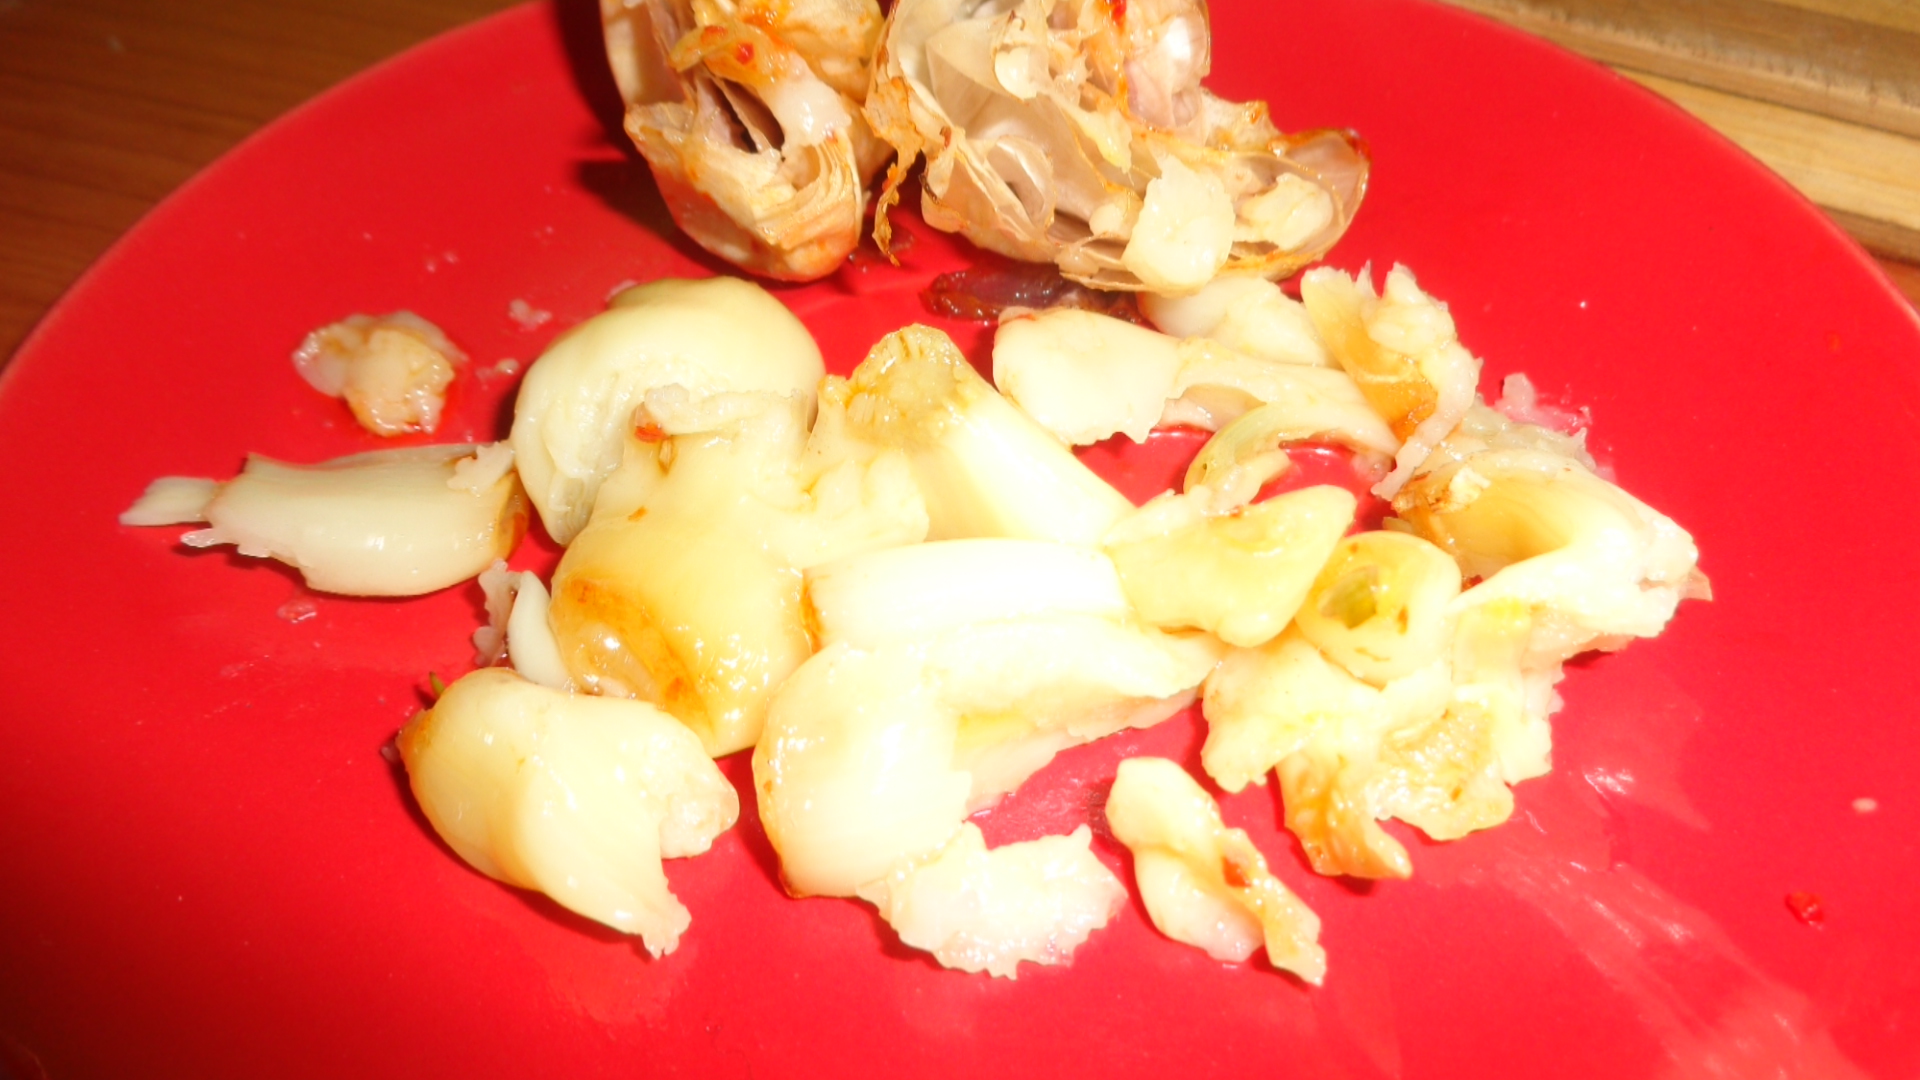 Ciorba de cartofi cu legume coapte